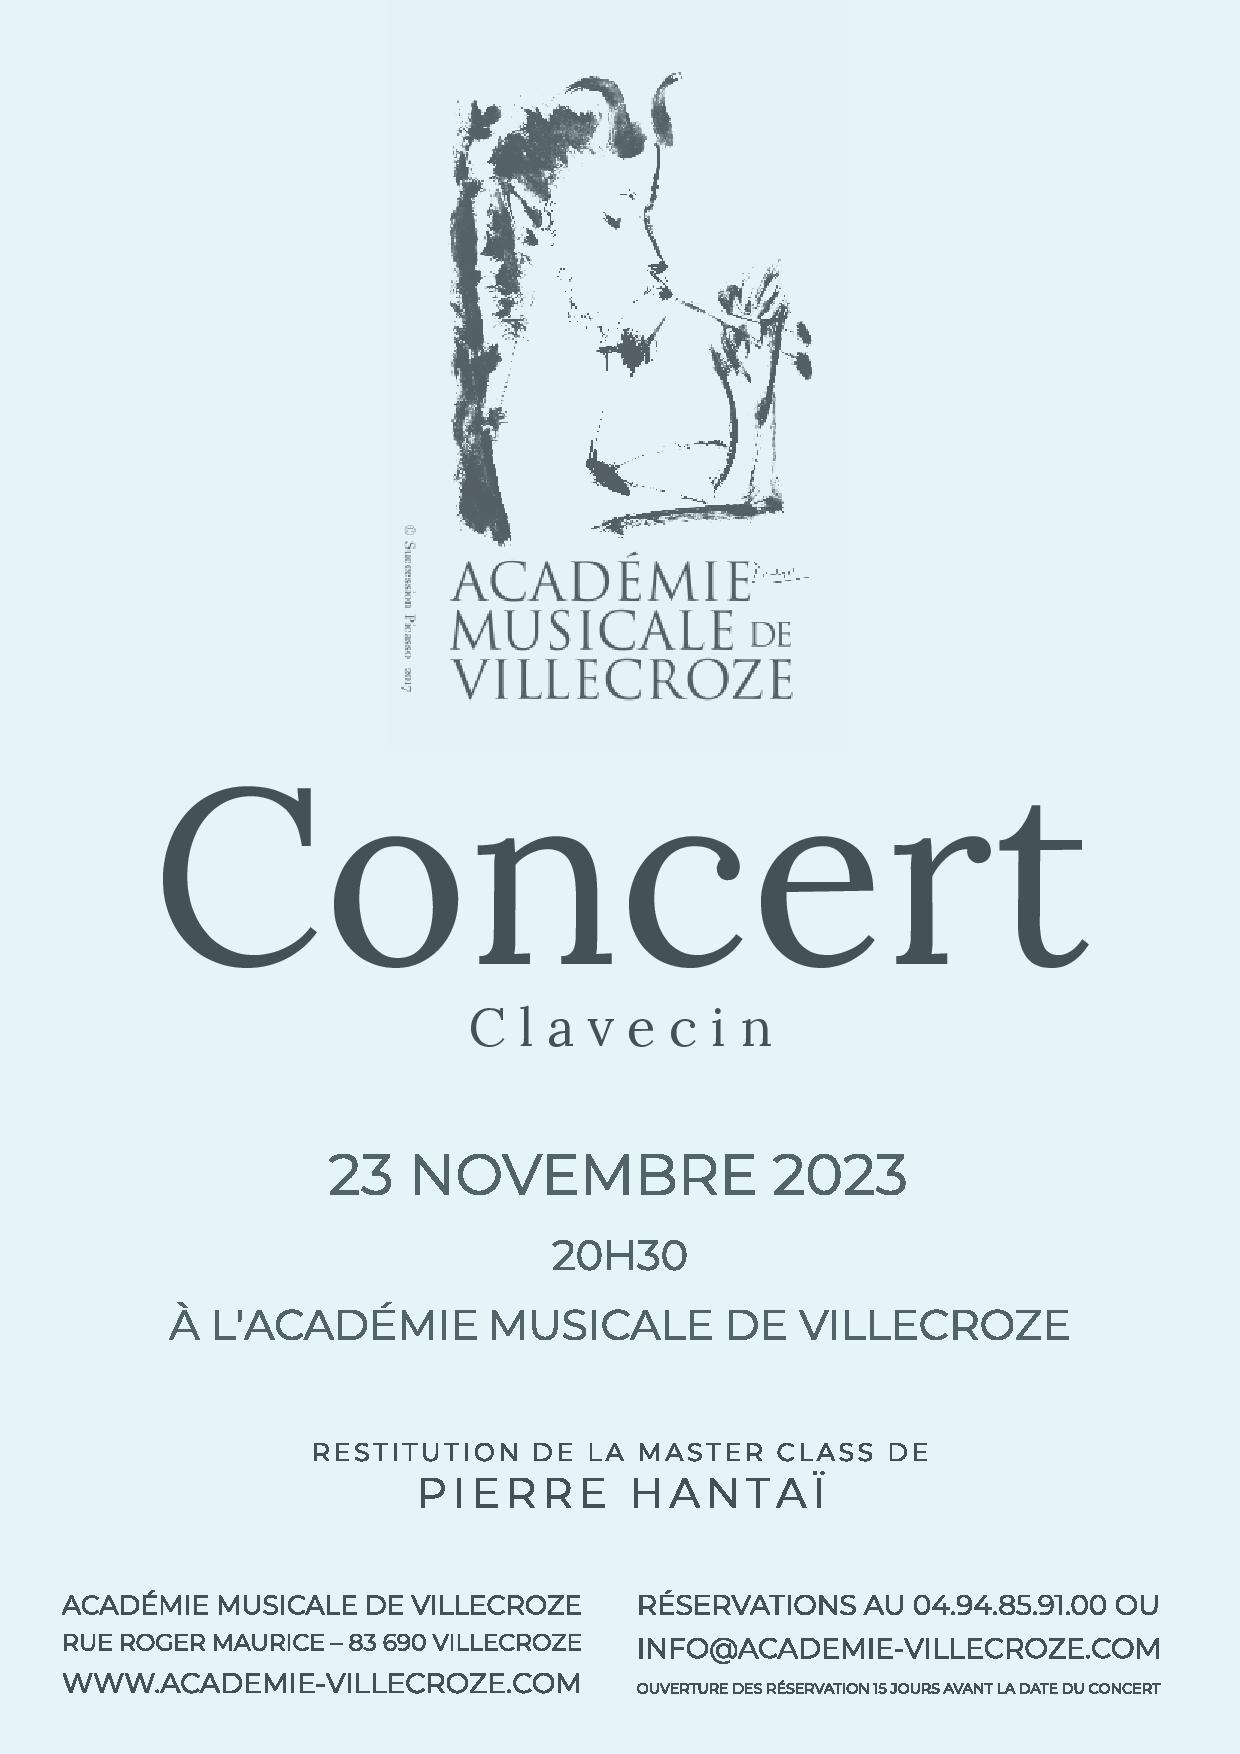 Concert de clavecin - Concert Académie Musicale